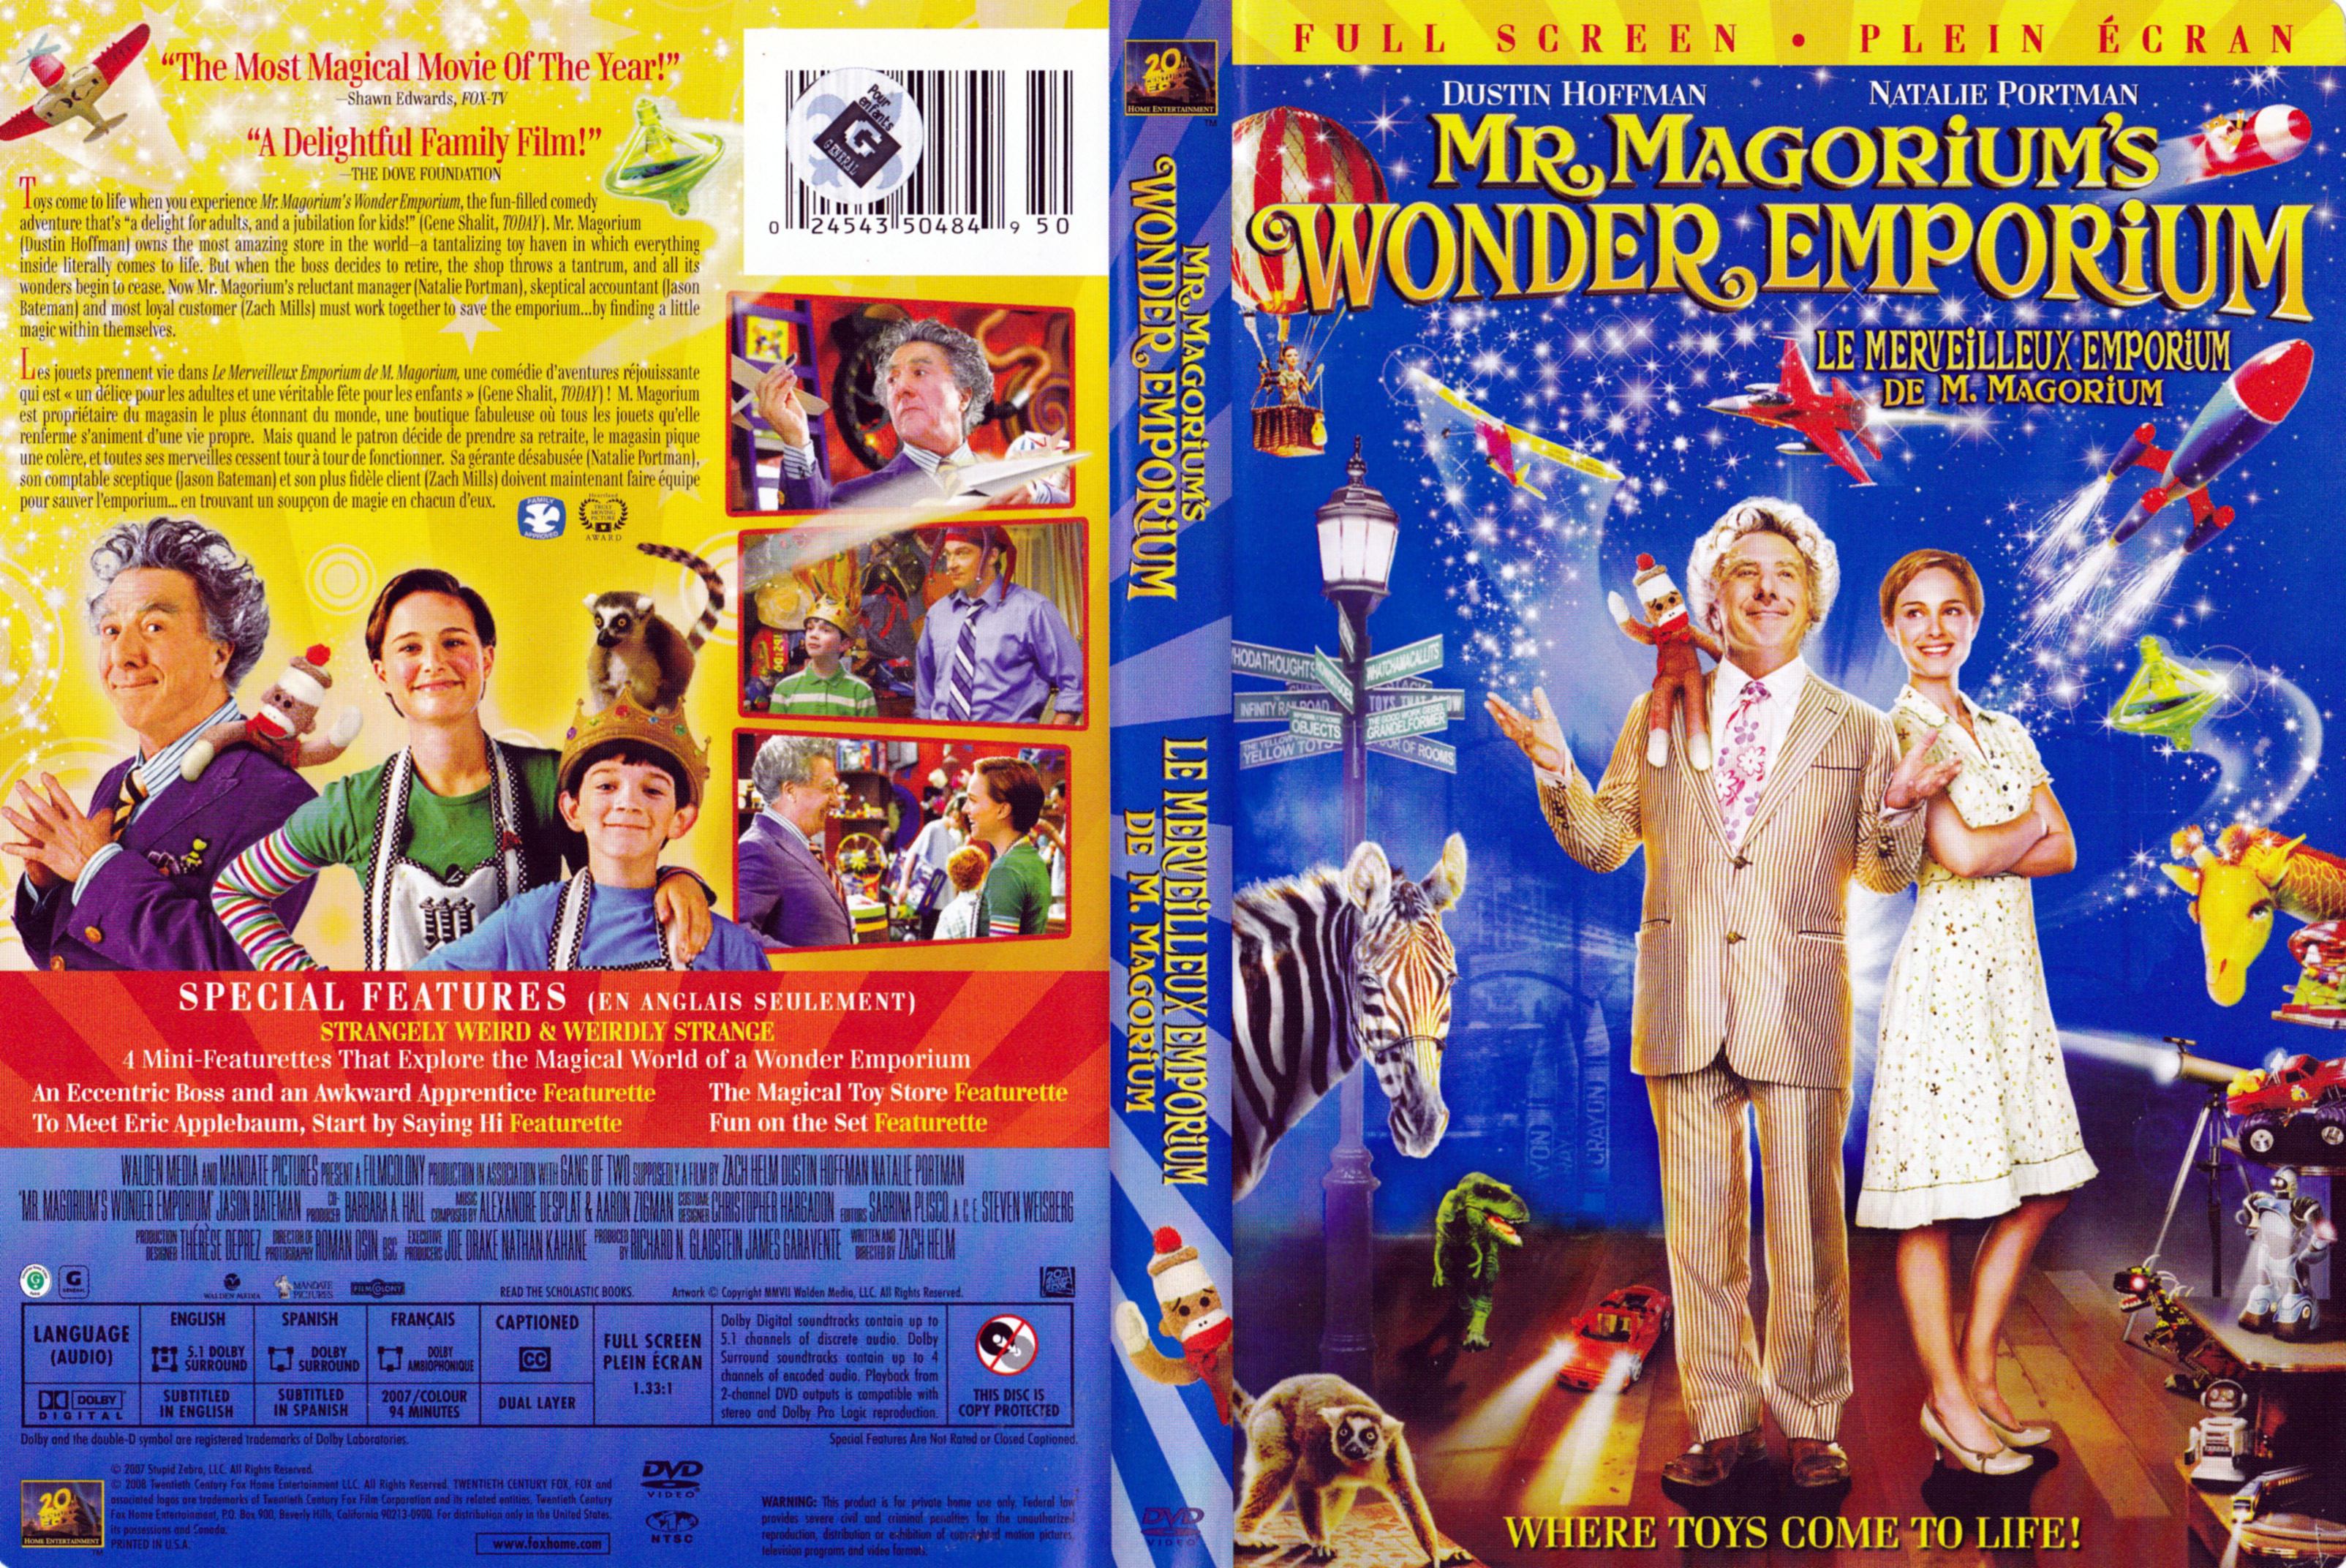 Jaquette DVD Mr Magorium wonder emporium - Le merveilleux emporium de M Magorium (Canadienne)